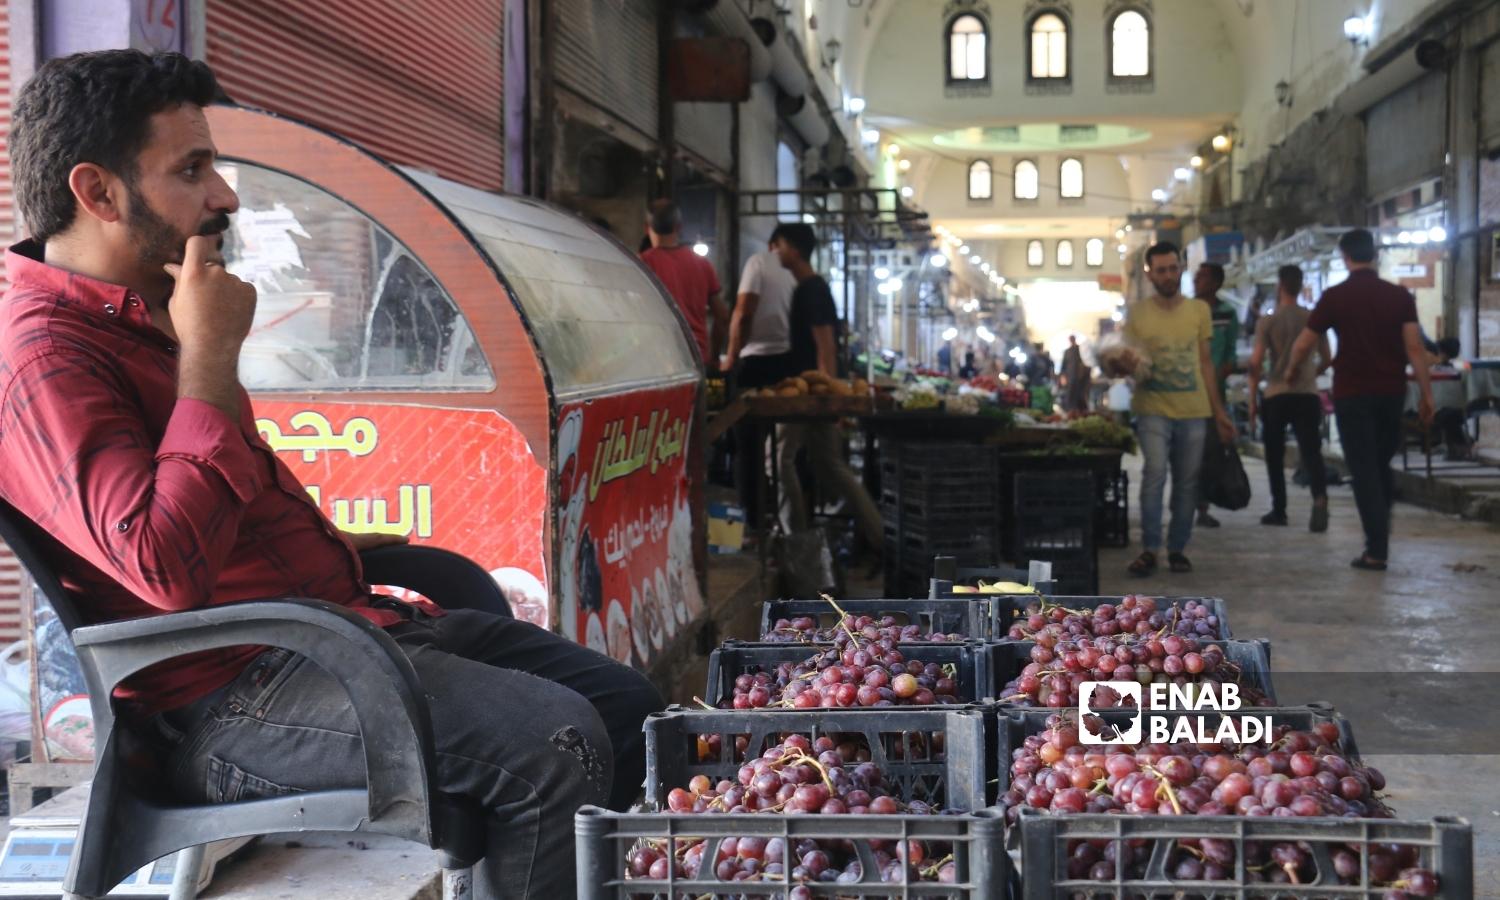  رجل يبيع العنب في السوق المسقوف بمدينة إعزاز بريف حلب الشمالي - 2 أيلول 2022 (عنب بلدي / ديان جنباز)